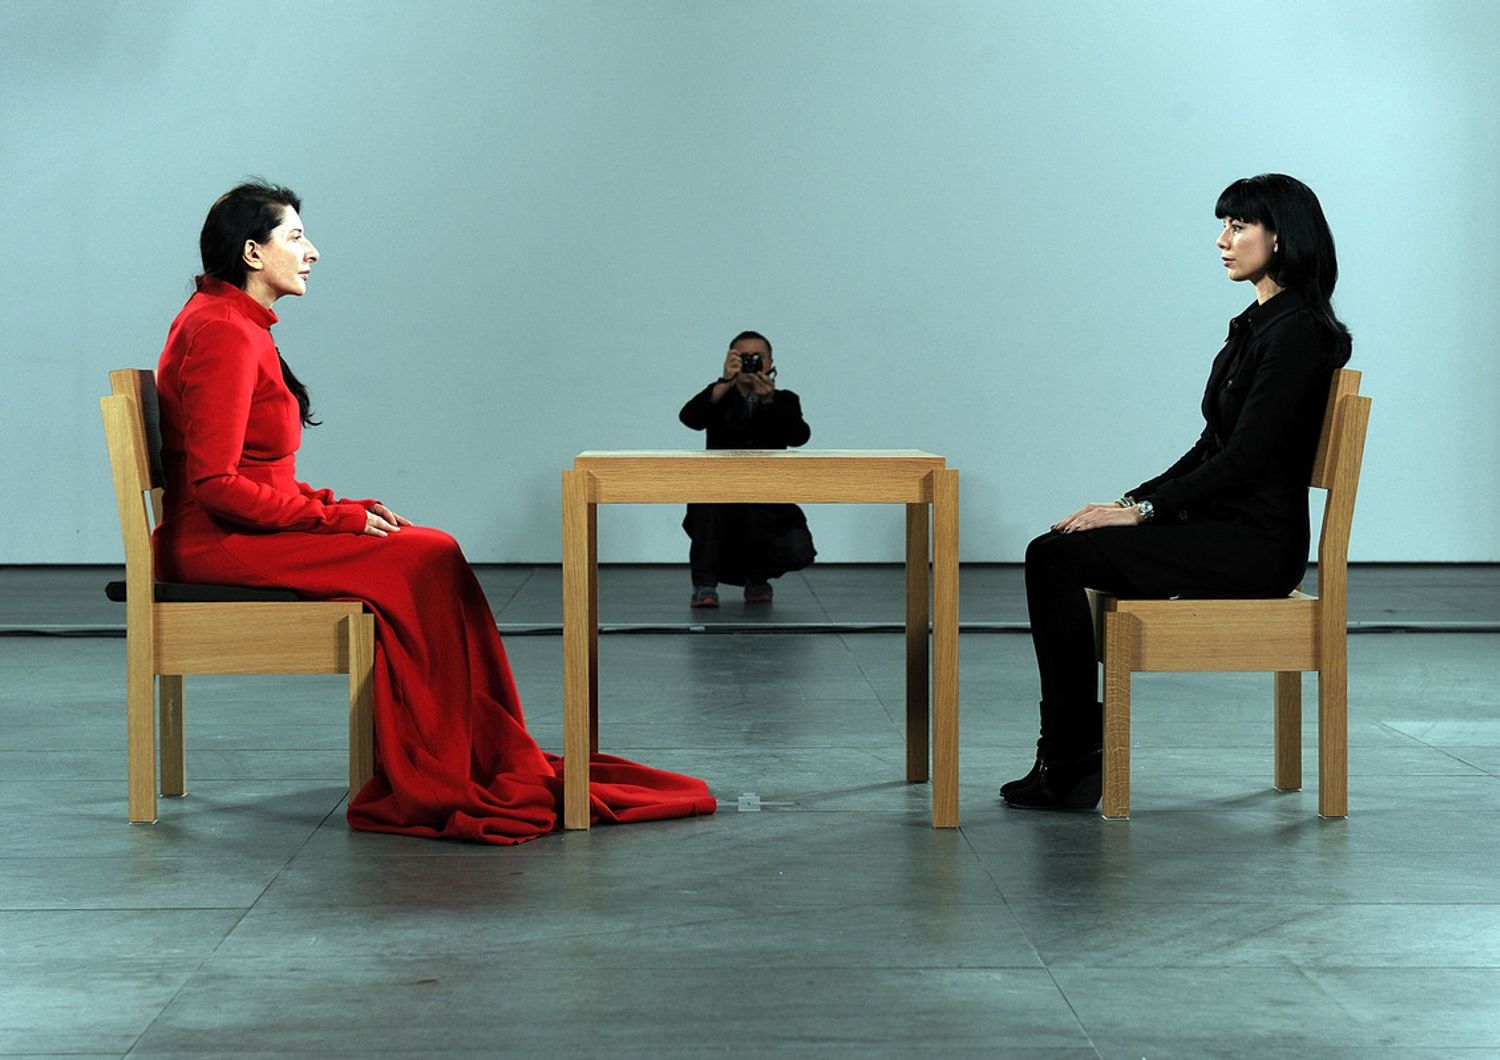 &nbsp;La performance di Marina Abramovic 'The artist is present' al Moma di New York nel 2010